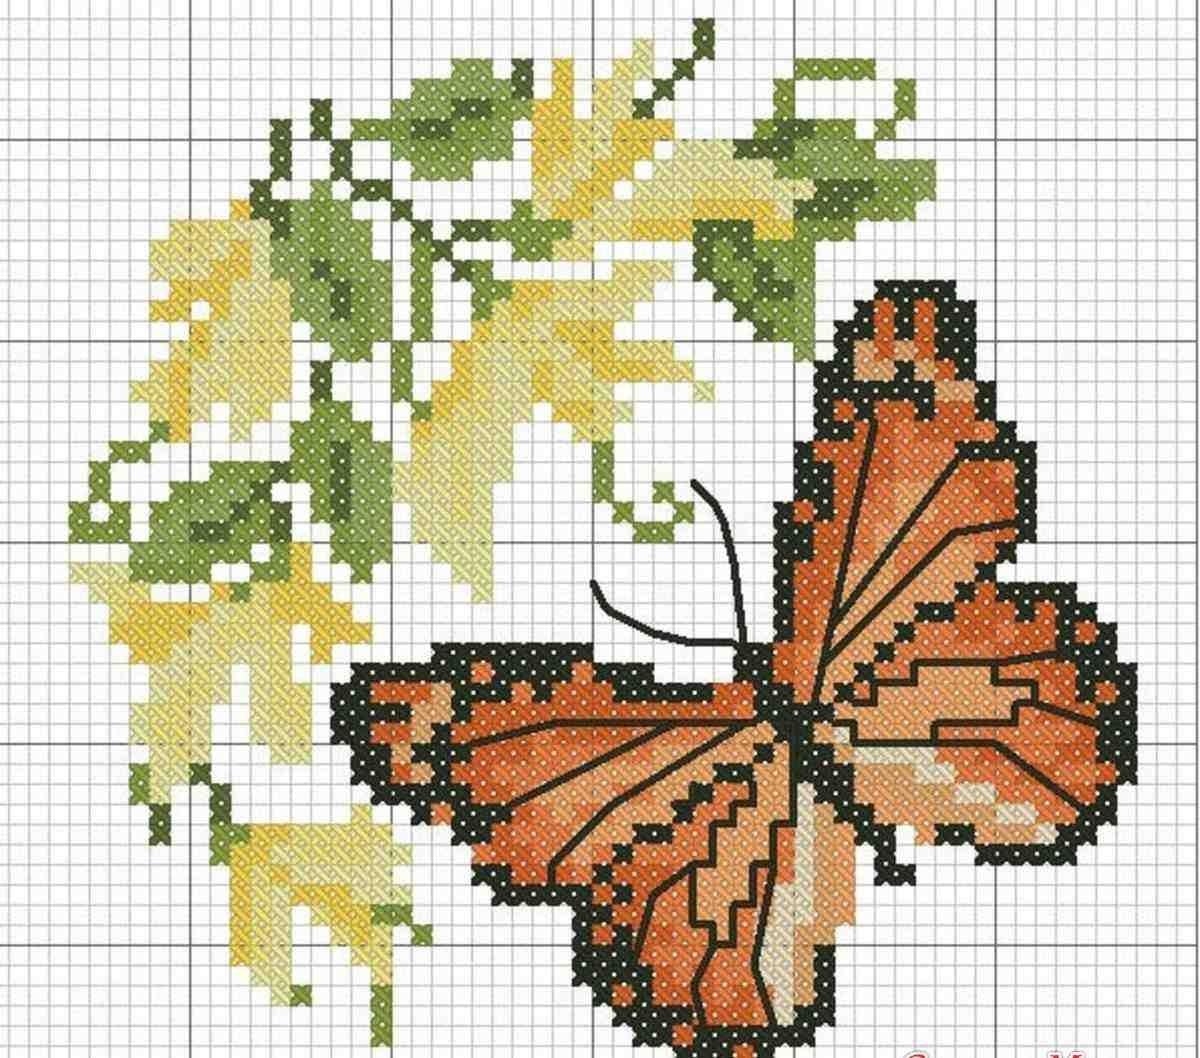 Бабочка крестиком схема. Схема вышивки бабочки. Вышивка крестом бабочки схемы. Вышивка крестиком бабочки схемы. Вышить бабочку крестиком схемы.